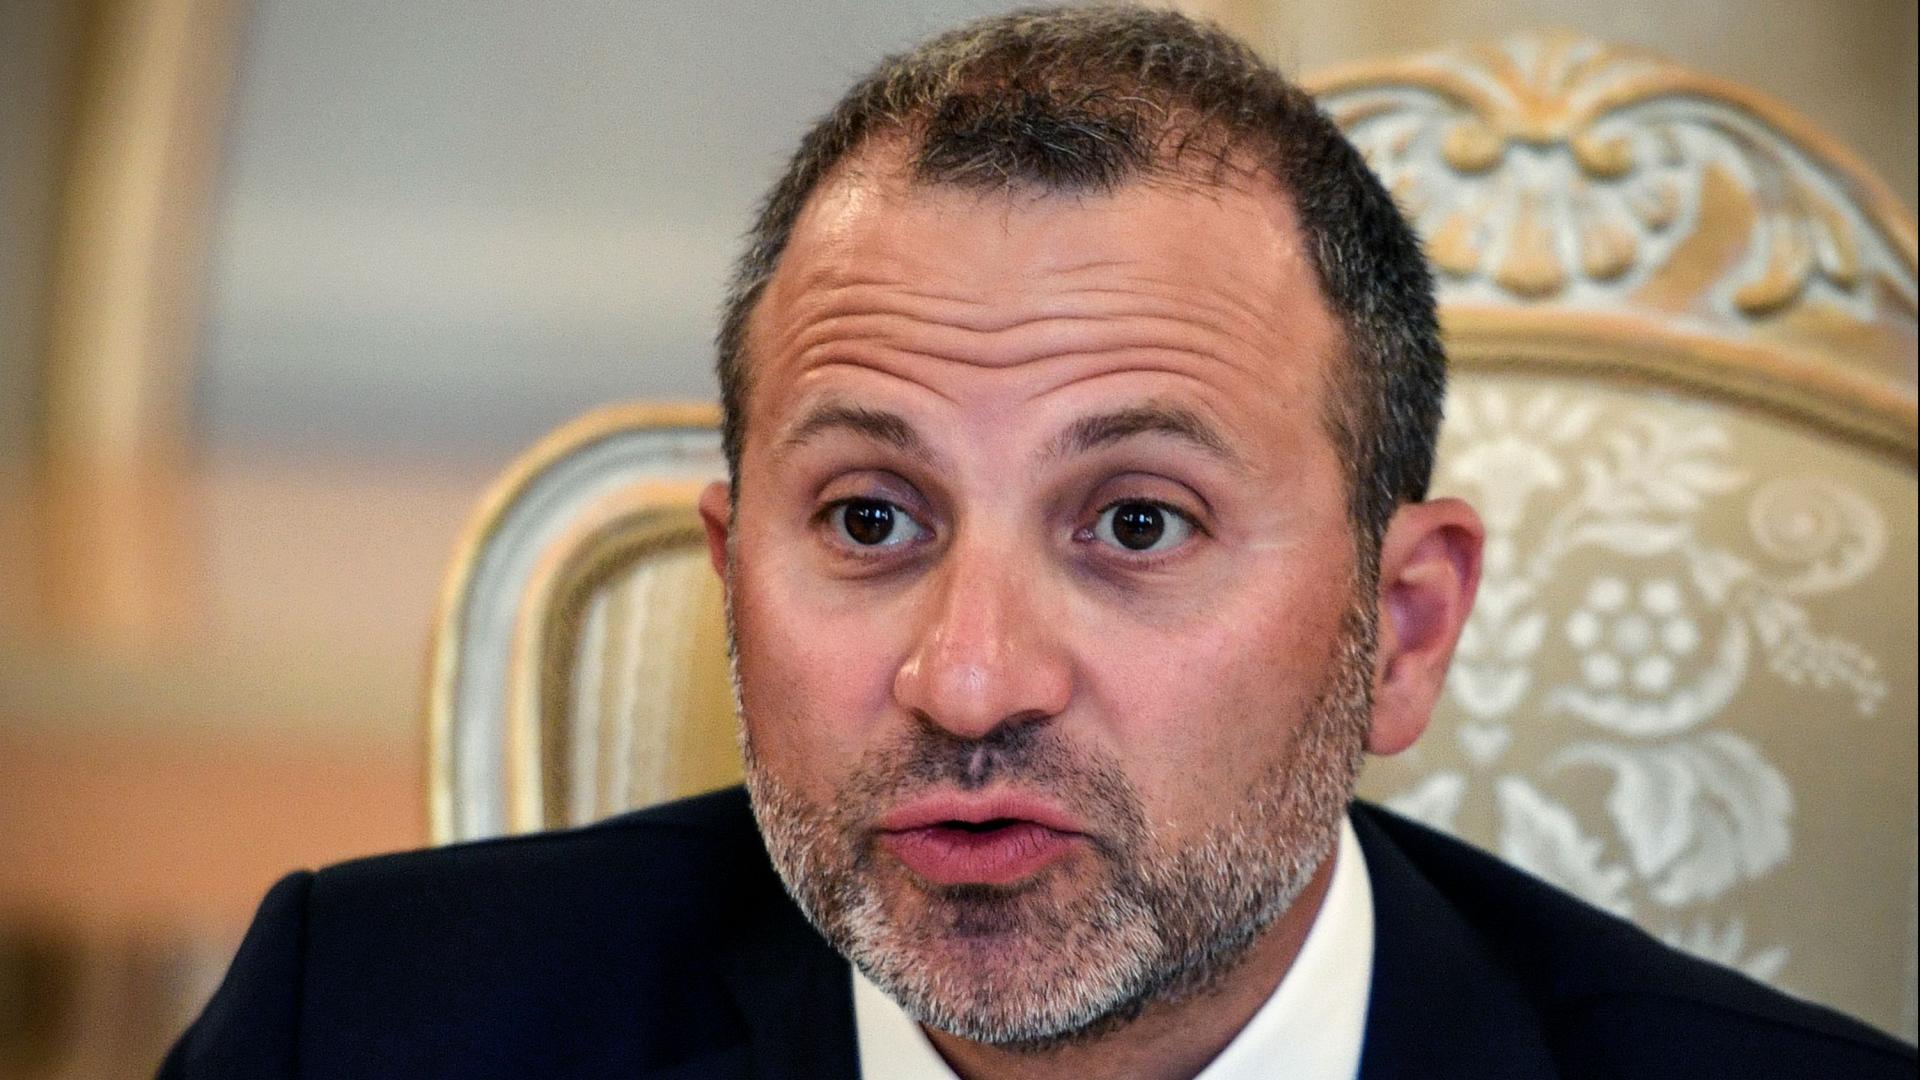 وزير الخارجية اللبناني يطالب ليبيا بالكشف عن مصير موسى الصدر ويأسف لغيابها عن القمة الاقتصادية